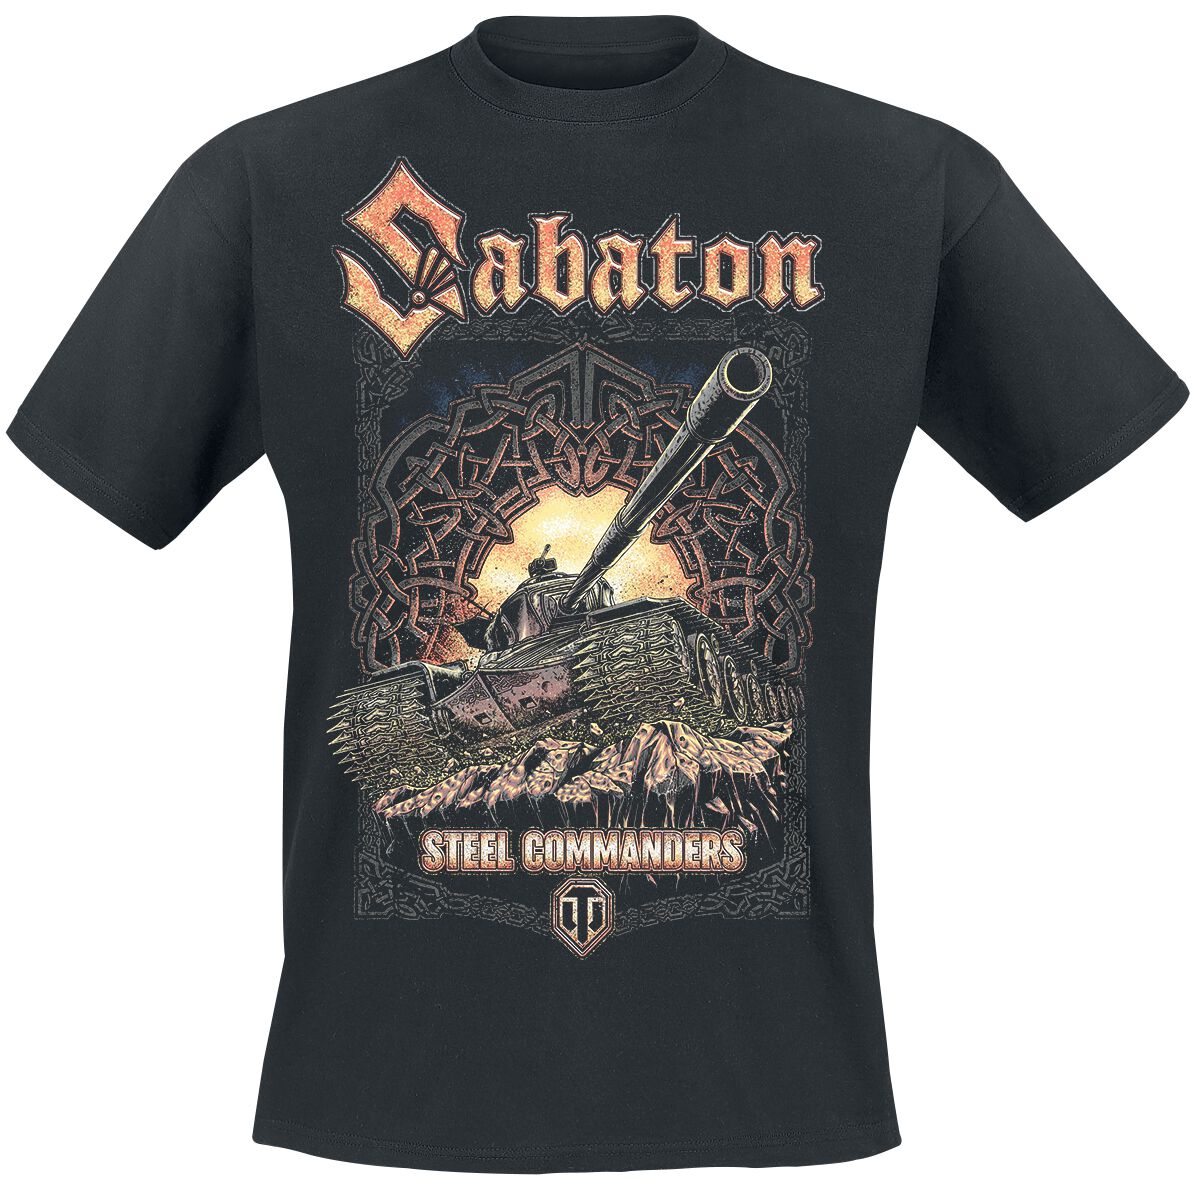 Sabaton - Gaming T-Shirt - World Of Tanks - S bis XXL - für Männer - Größe M - schwarz  - Lizenziertes Merchandise!